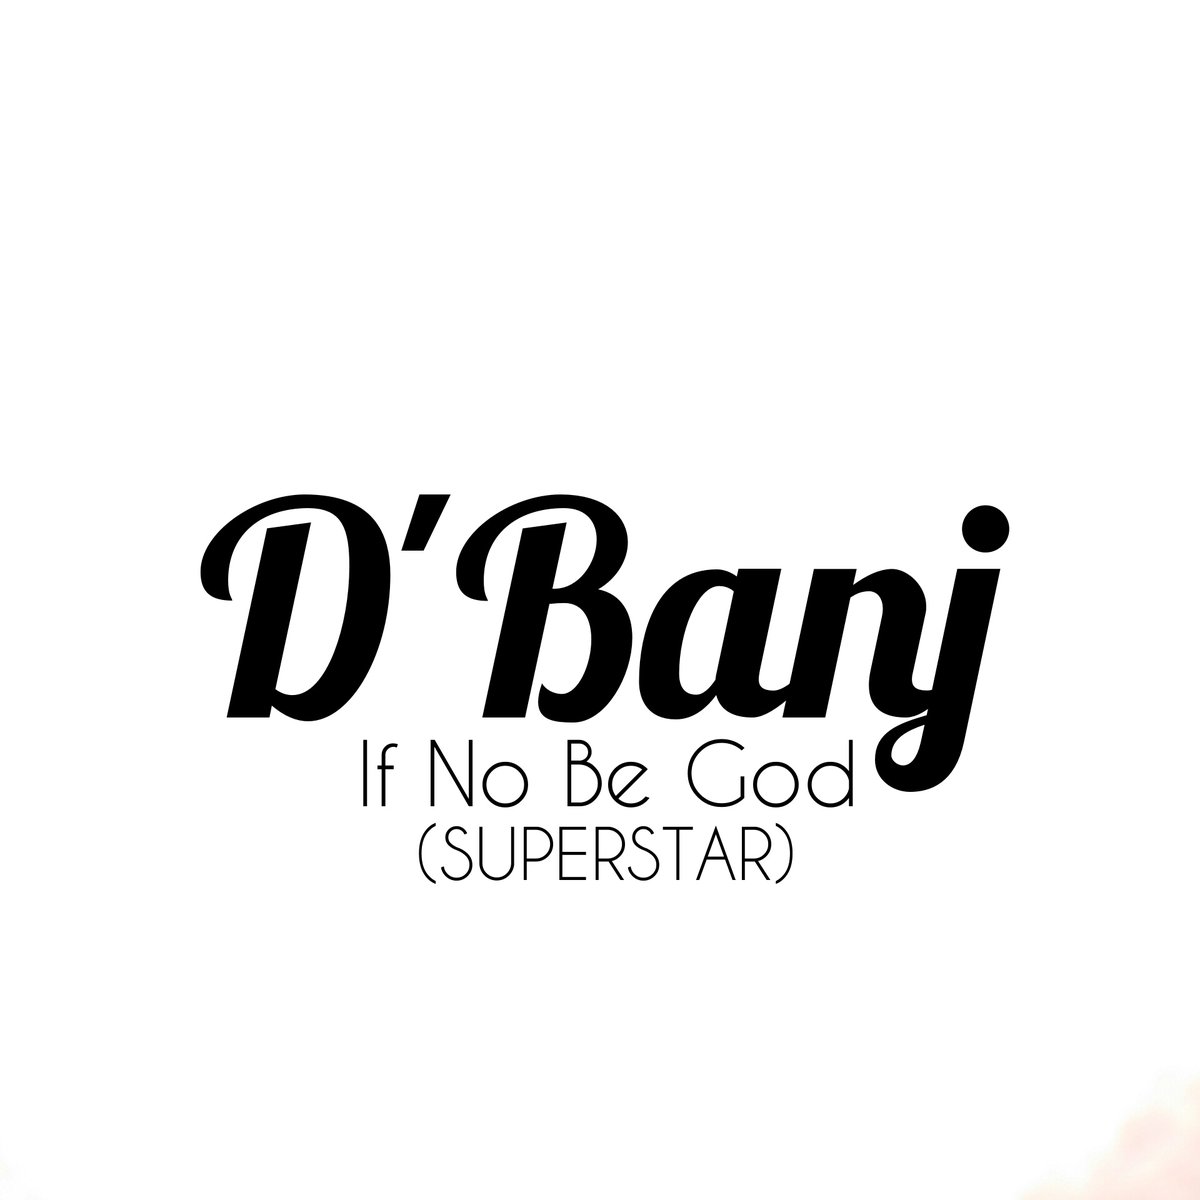 D’banj If No Be God Superstar